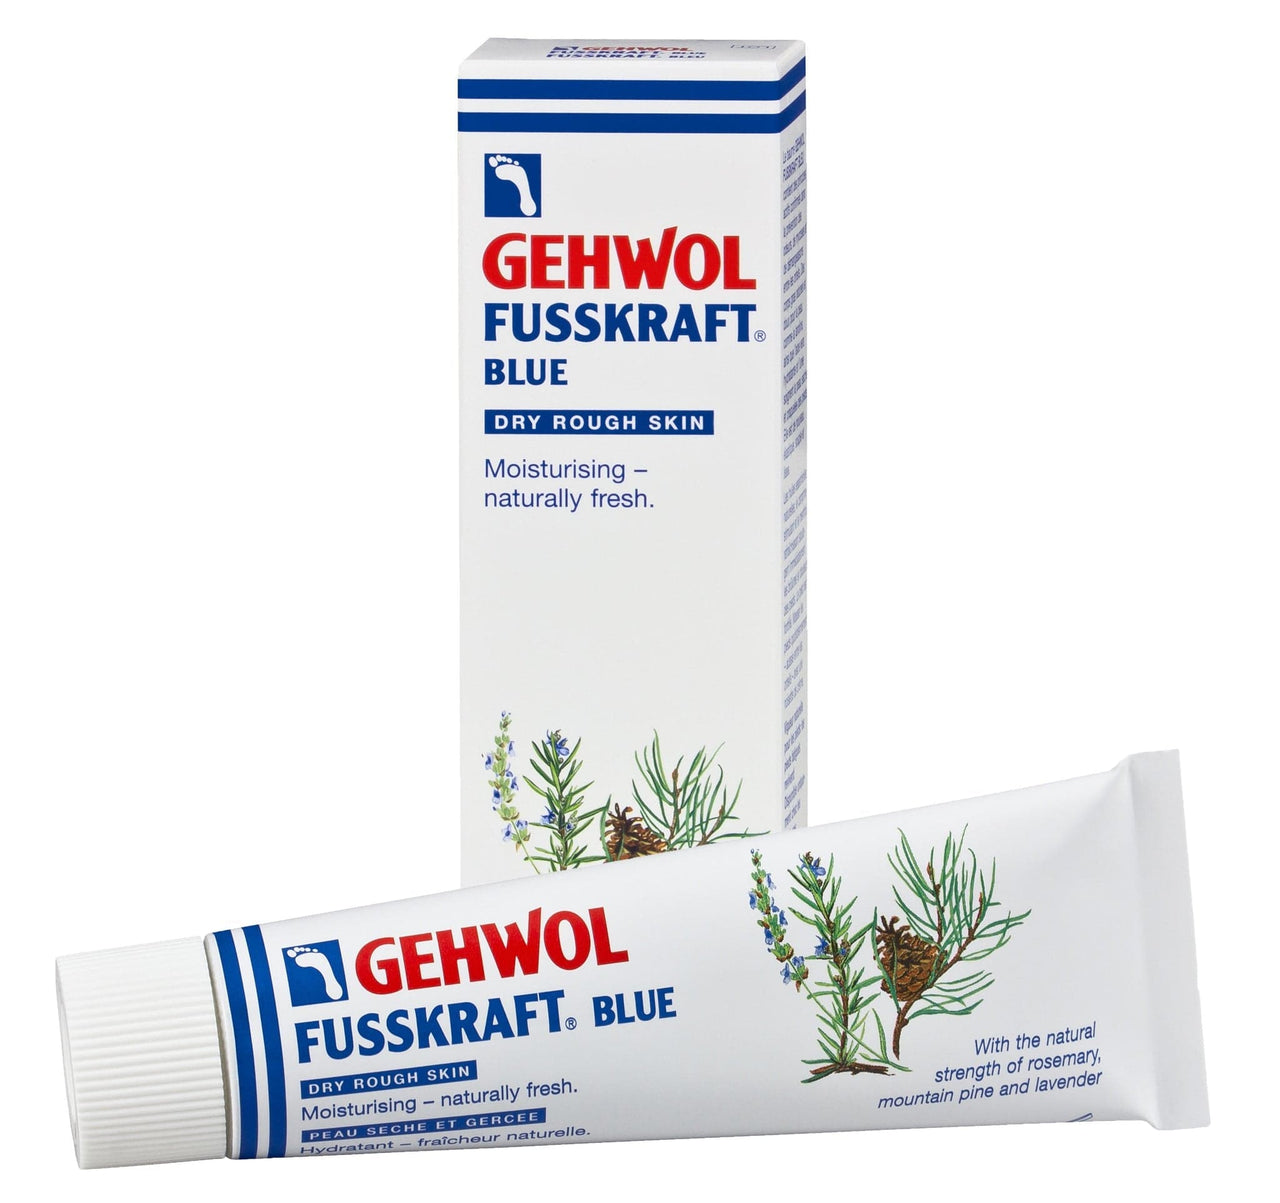 GEHWOL_Fusskraft Blue - Dry Rough Skin_Cosmetic World